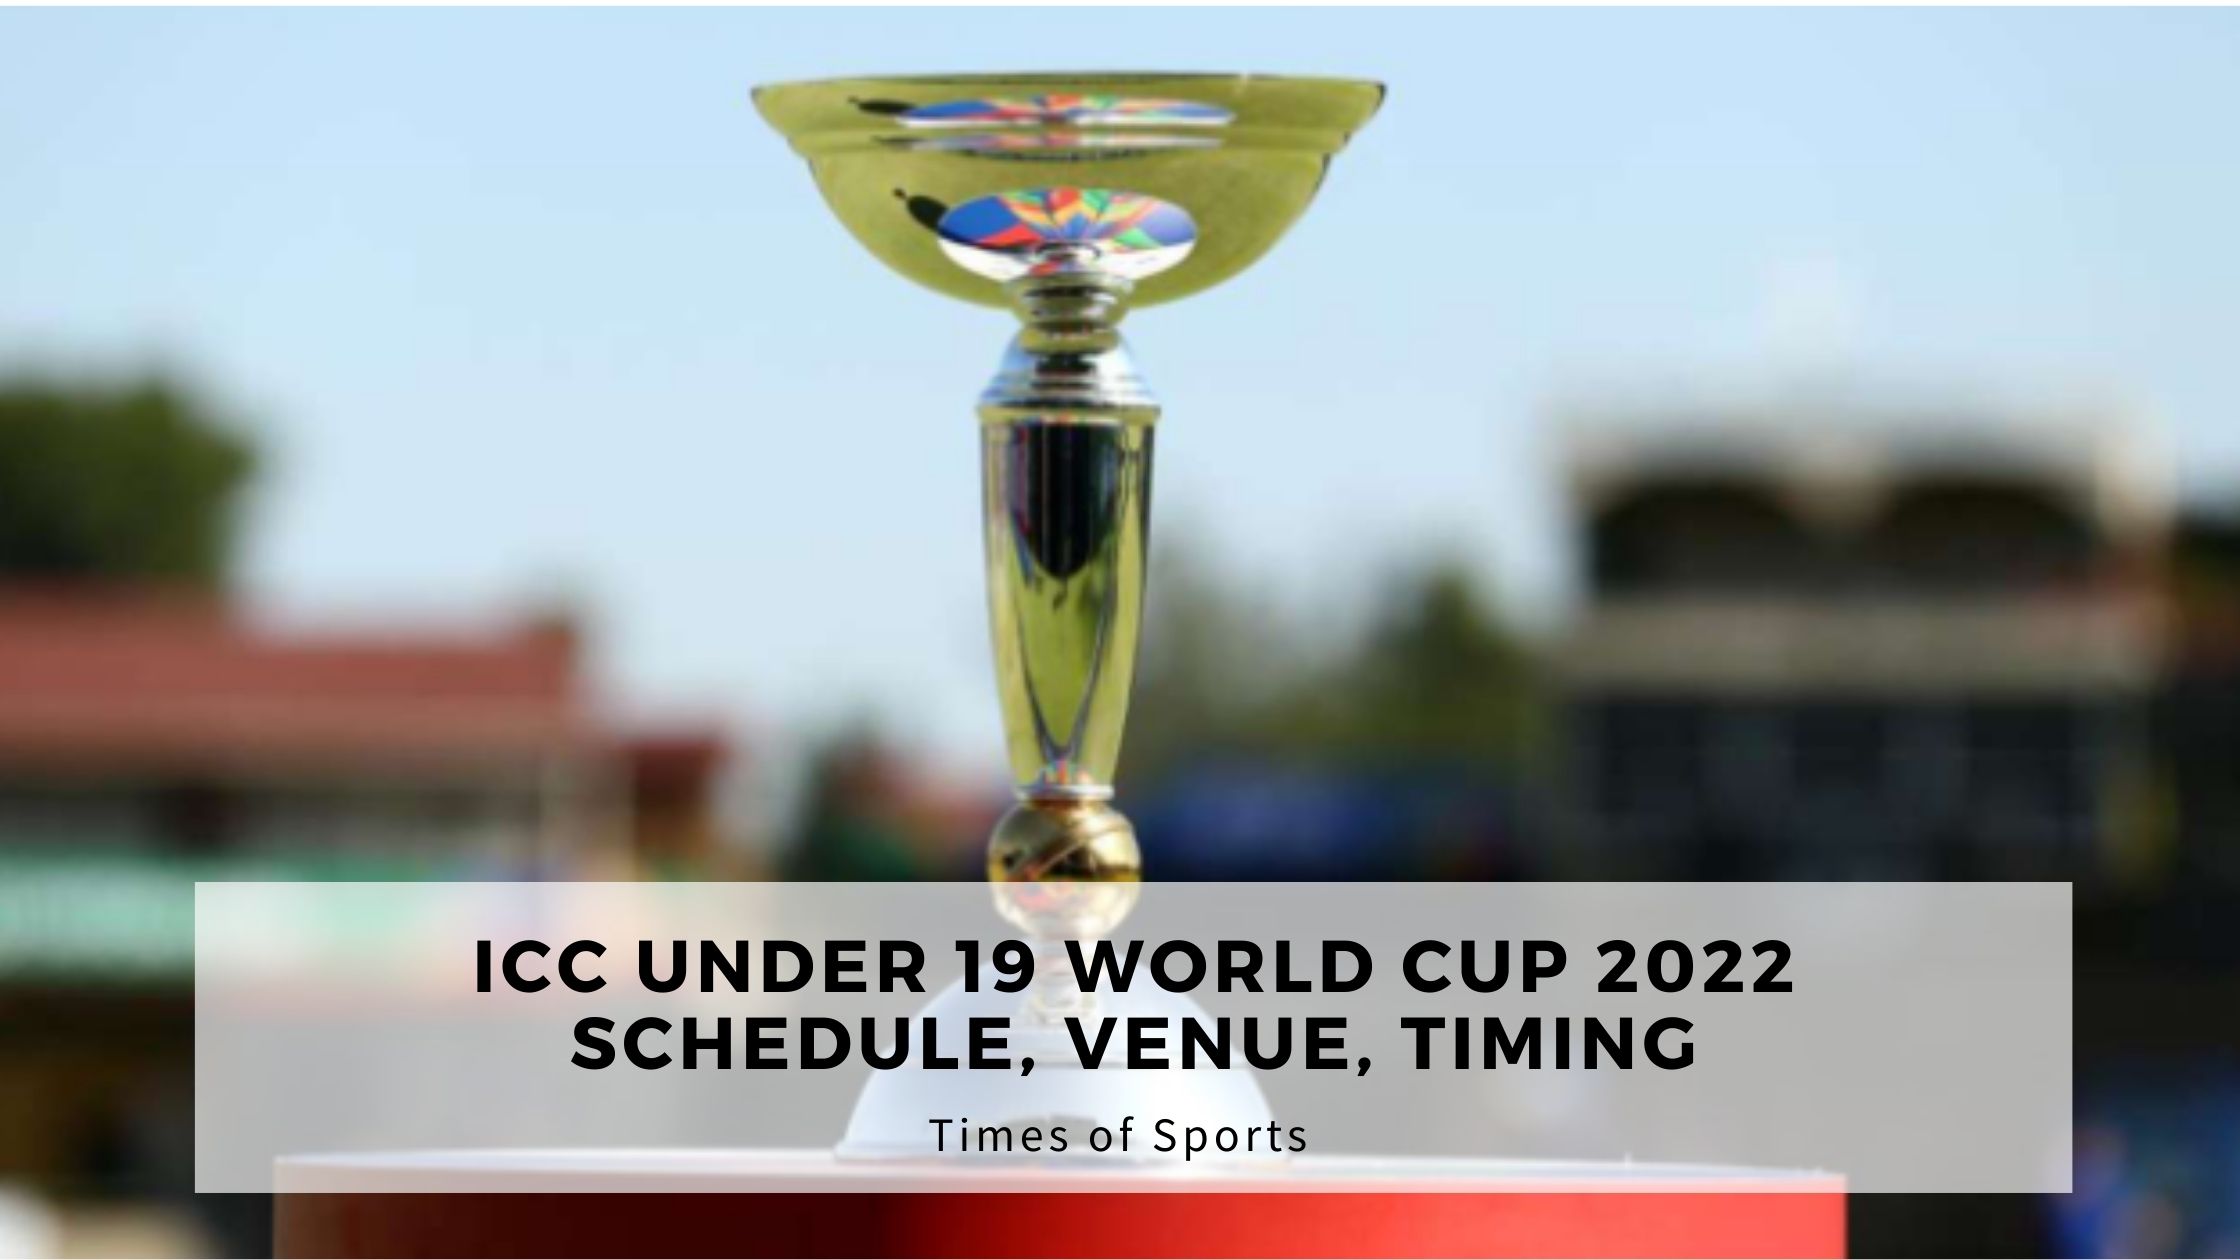 ICC Under 19 World Cup 2022 Schedule